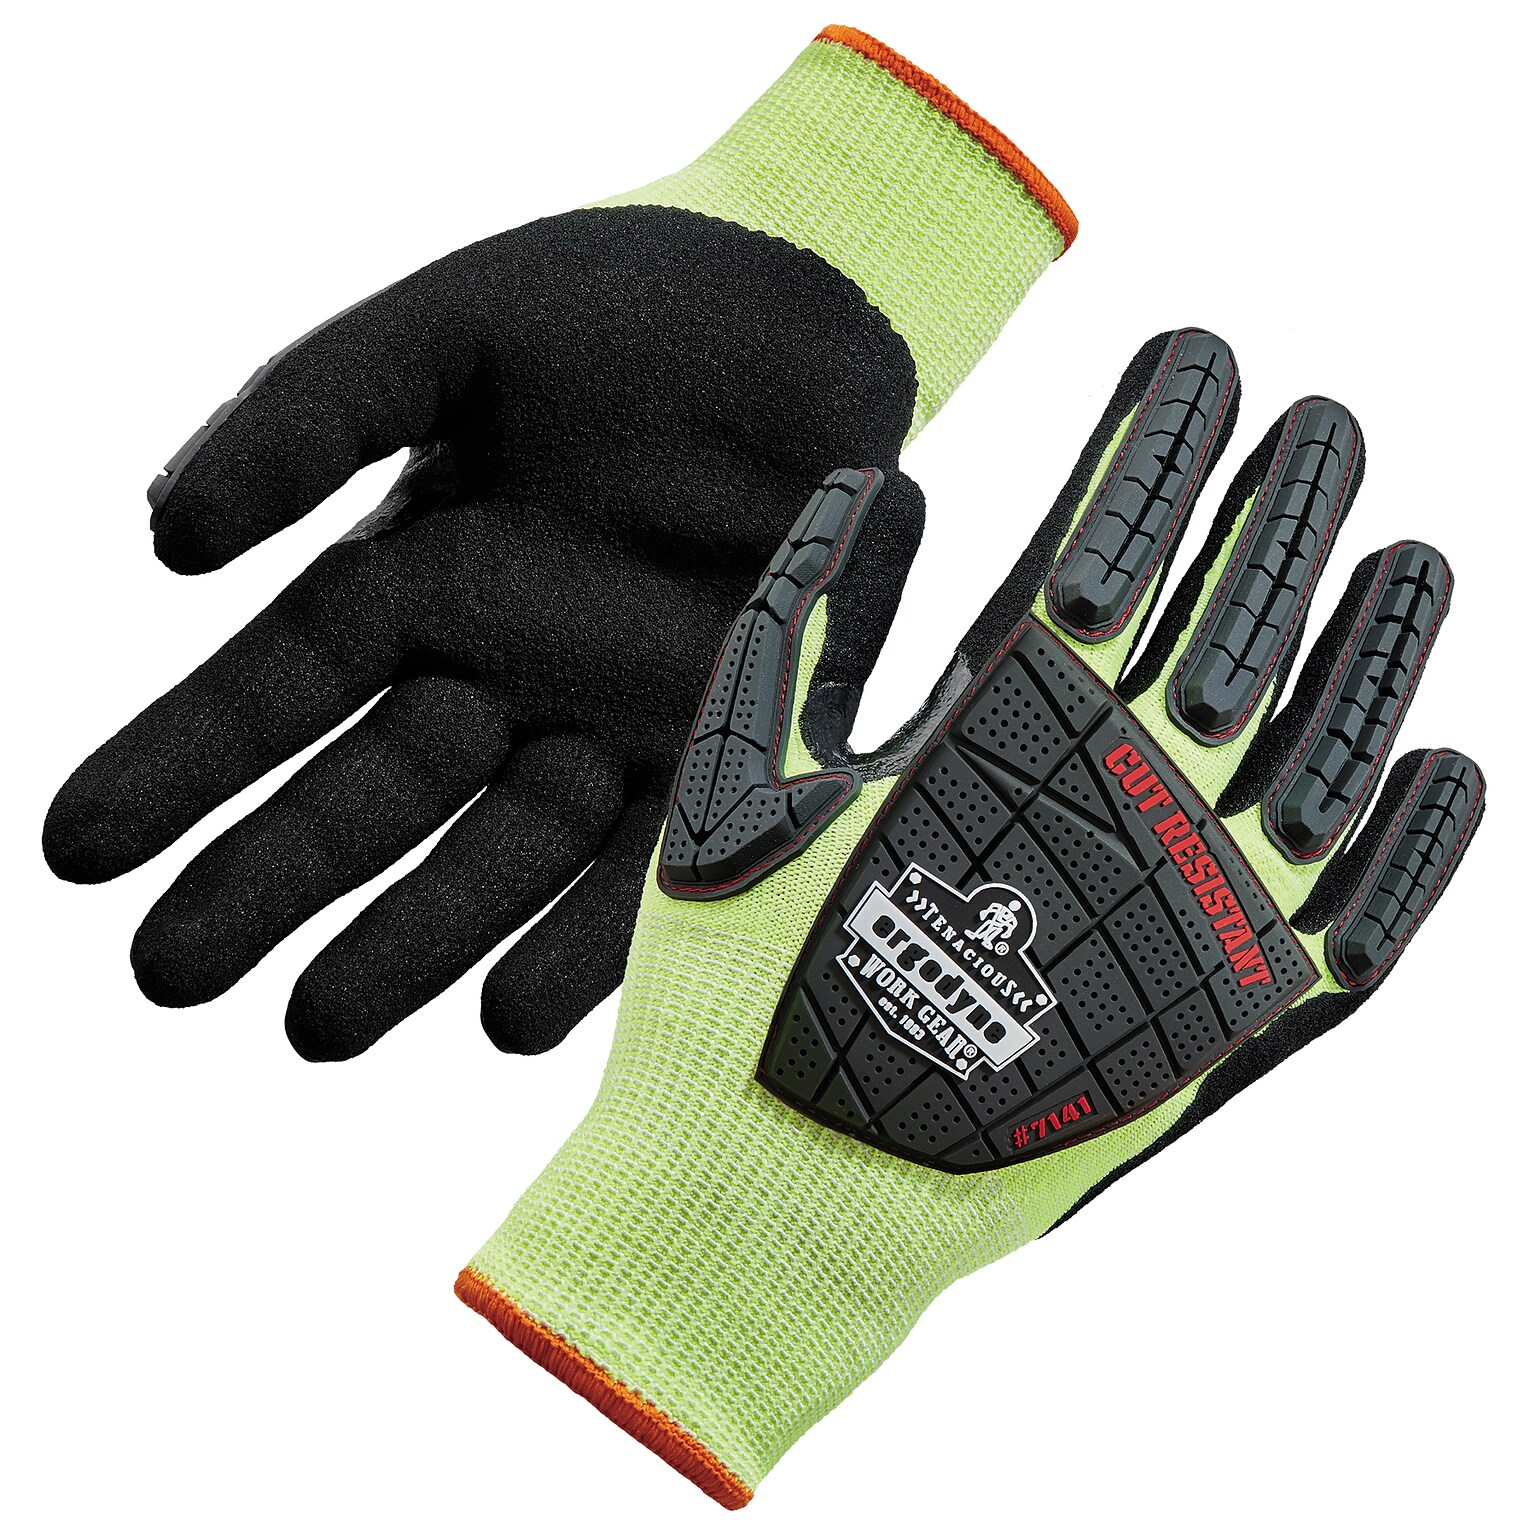 Ergodyne ProFlex 7141 Hi-Vis Nitrile Coated Cut-Resistant Gloves, ANSI A4, Lime, Large, 1 Pair (17914)